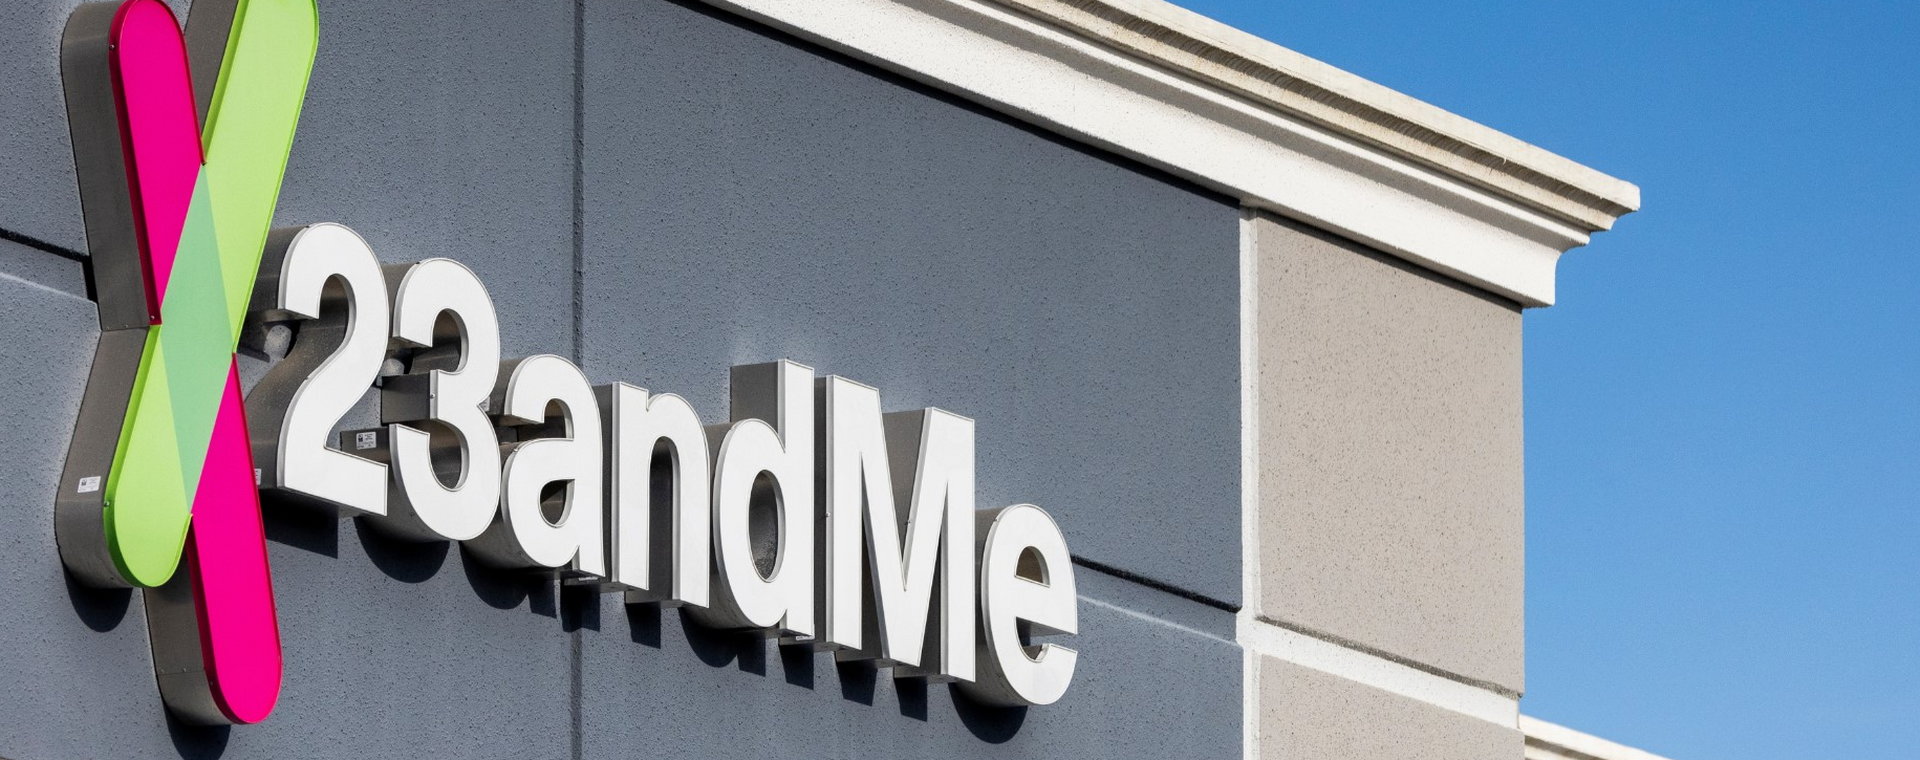 23andMe straciło miliardy ze swojej wyceny